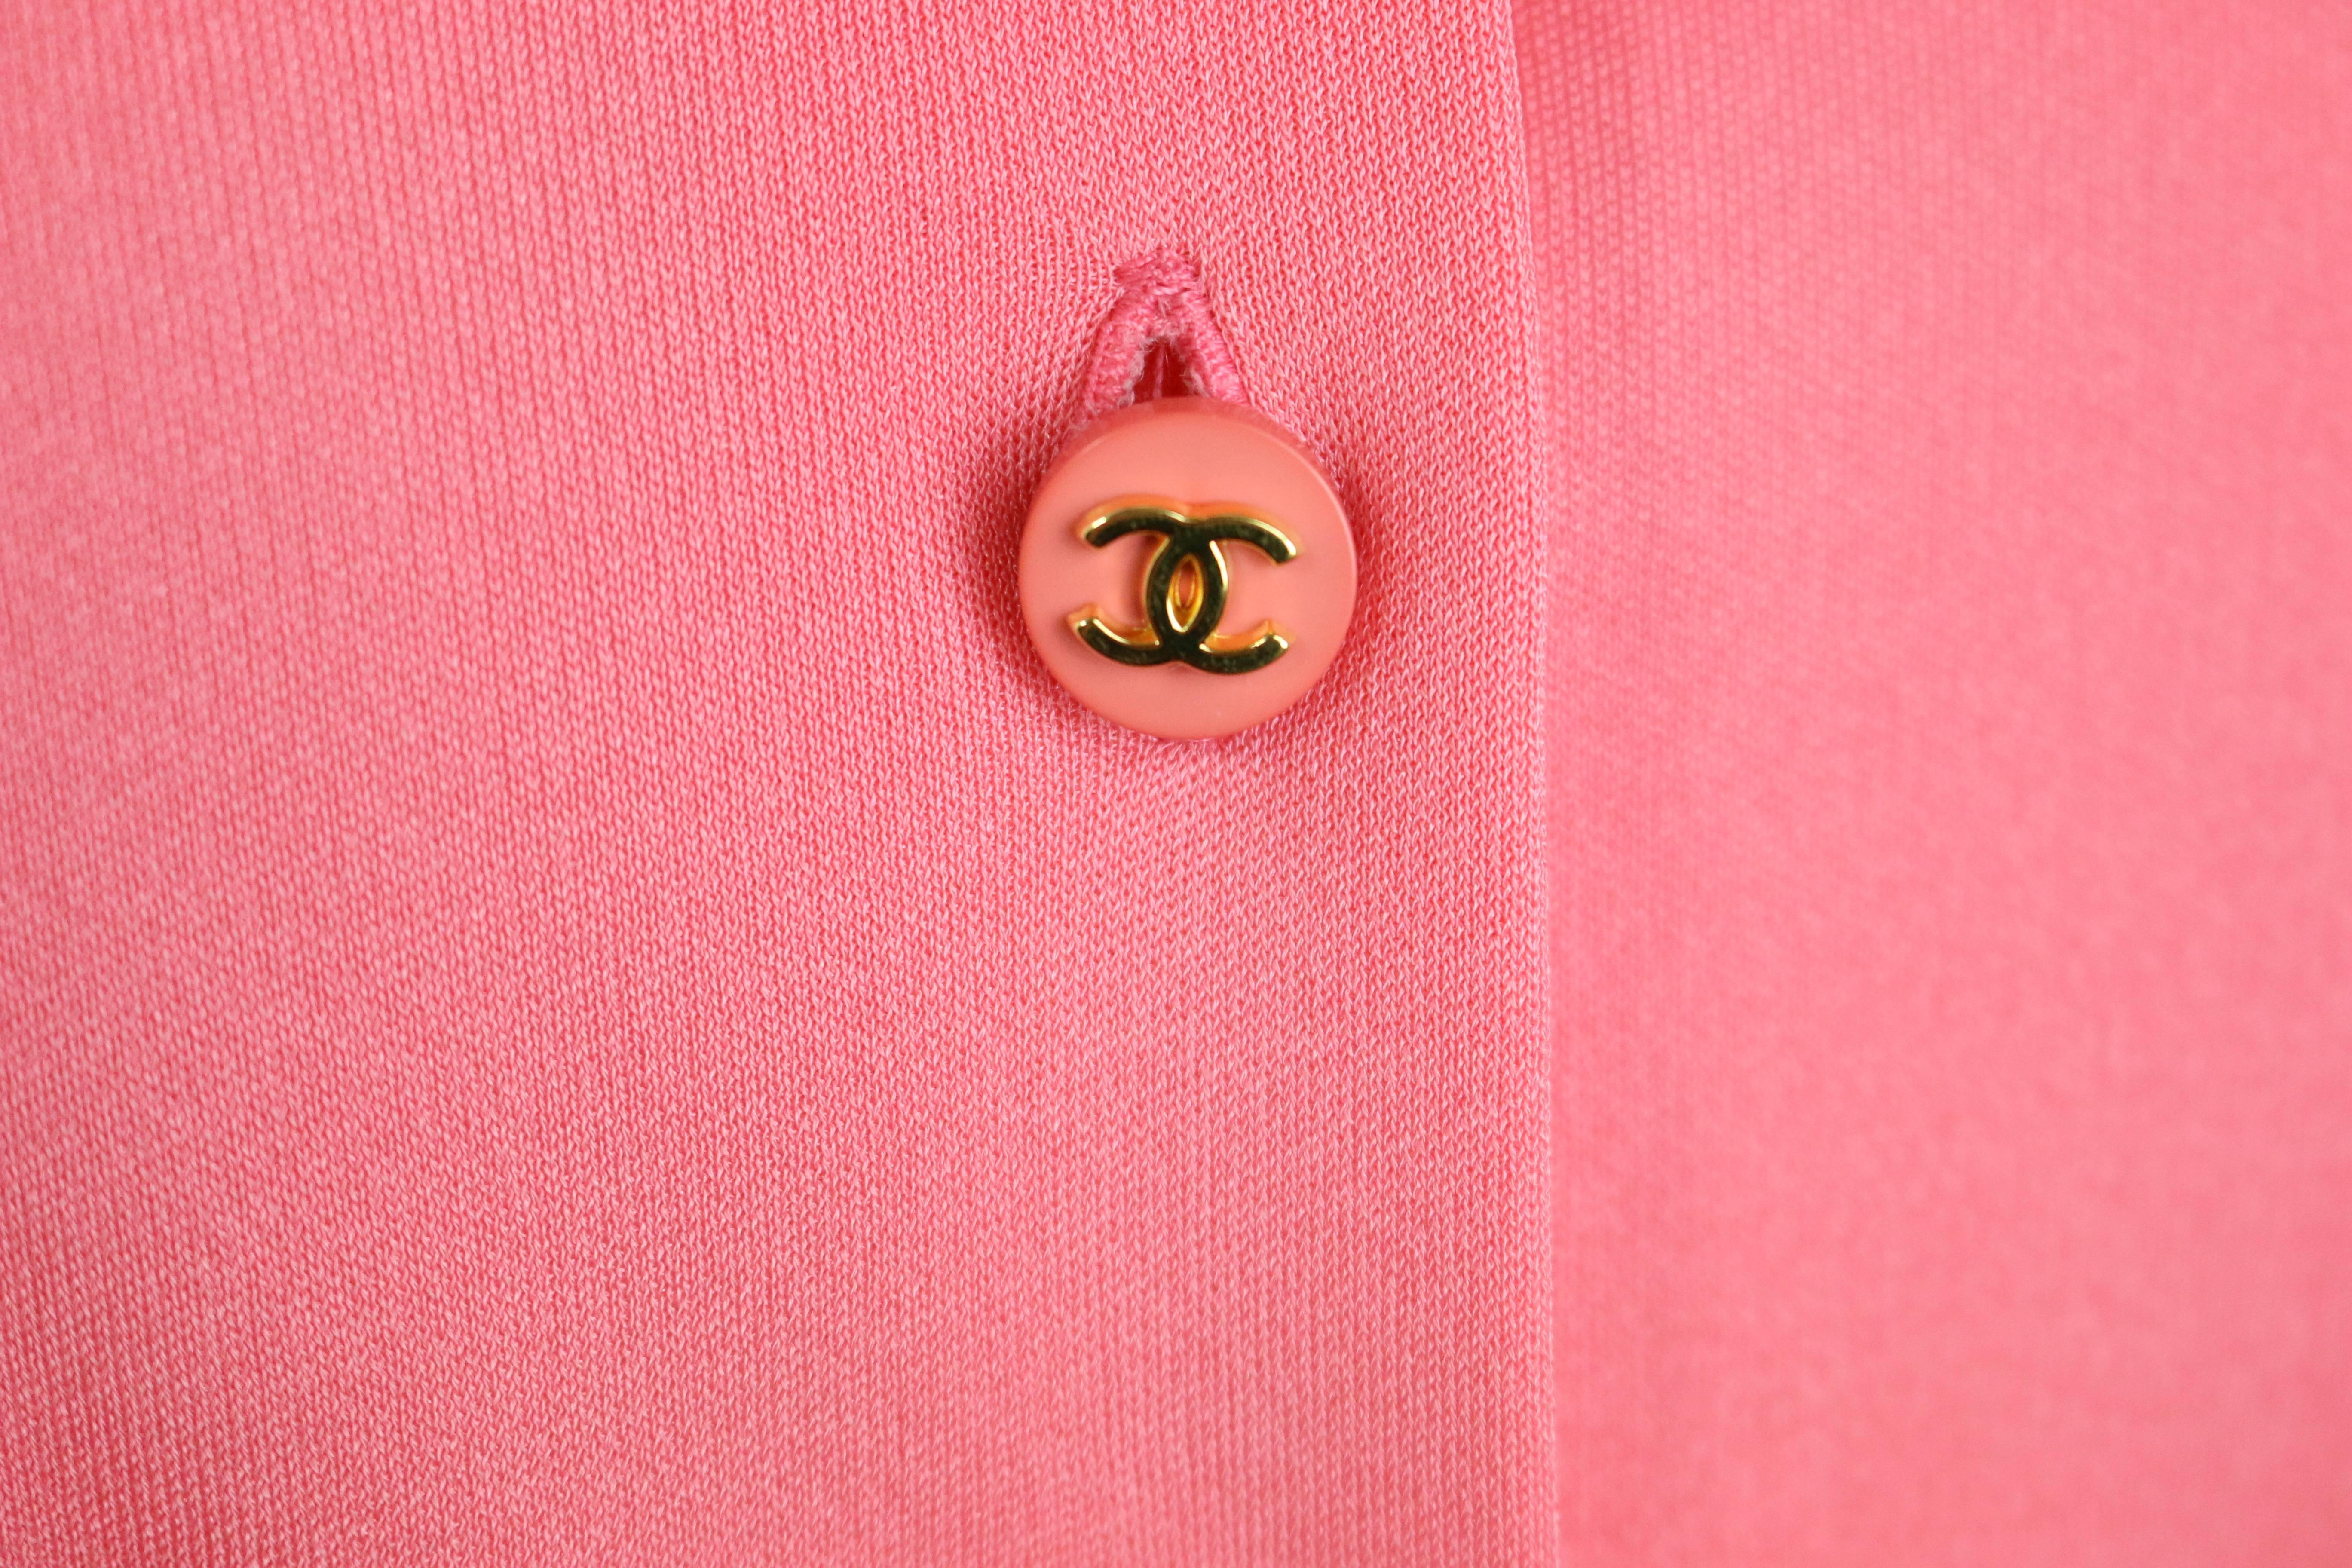 - Rosa Seidenhemd von Chanel aus der Cruise Collection von 1997. 

- Mit neun roségoldenen 